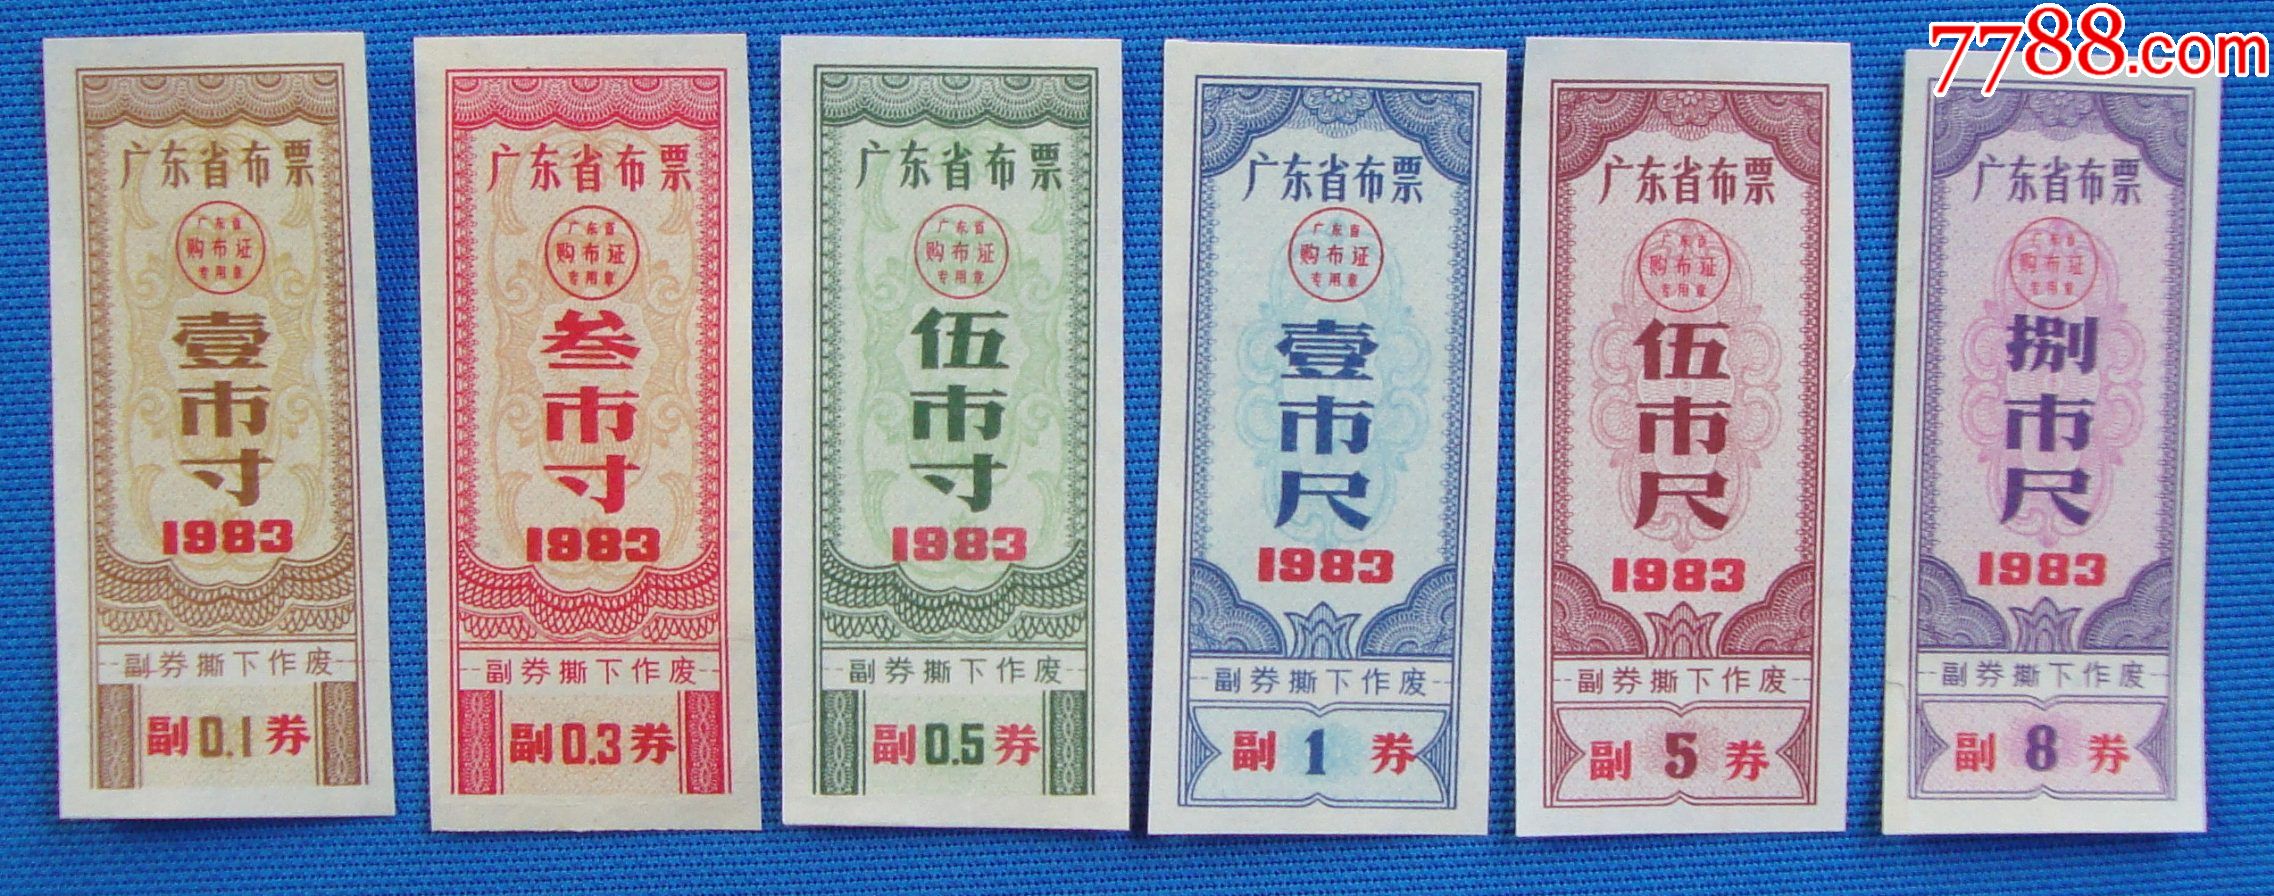 1983布票图片